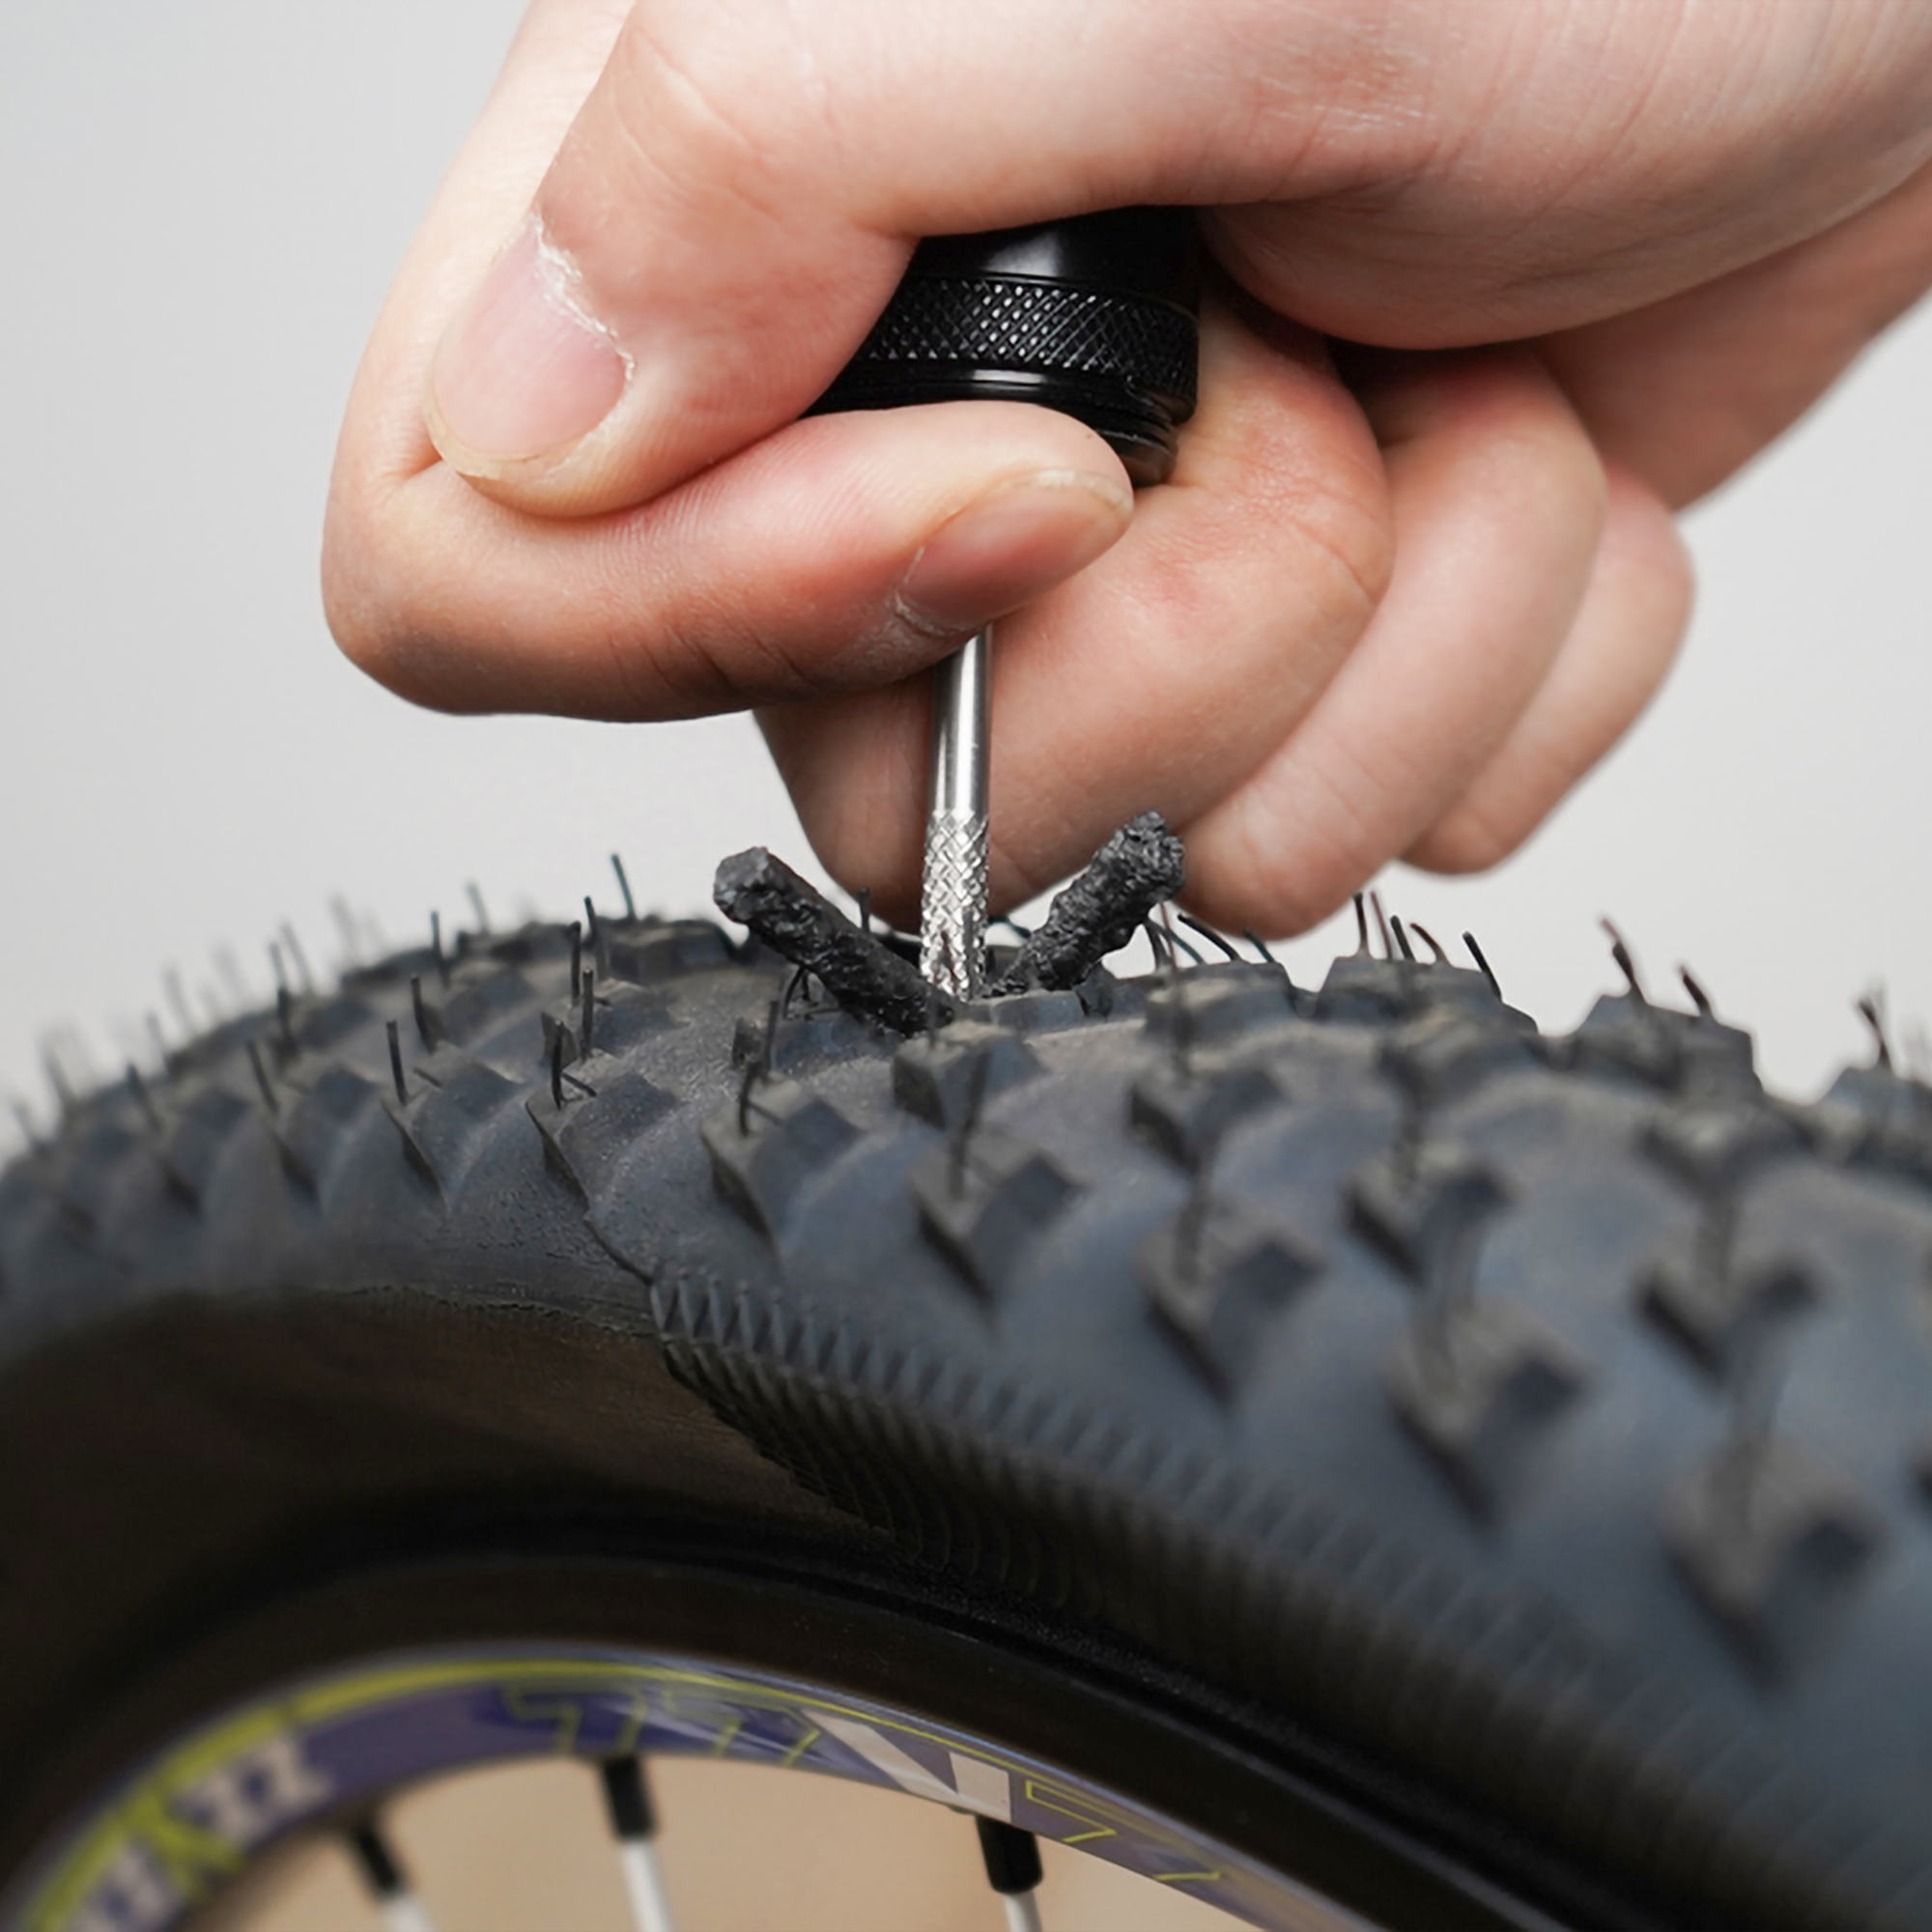 tubeless road bike tire repair kit